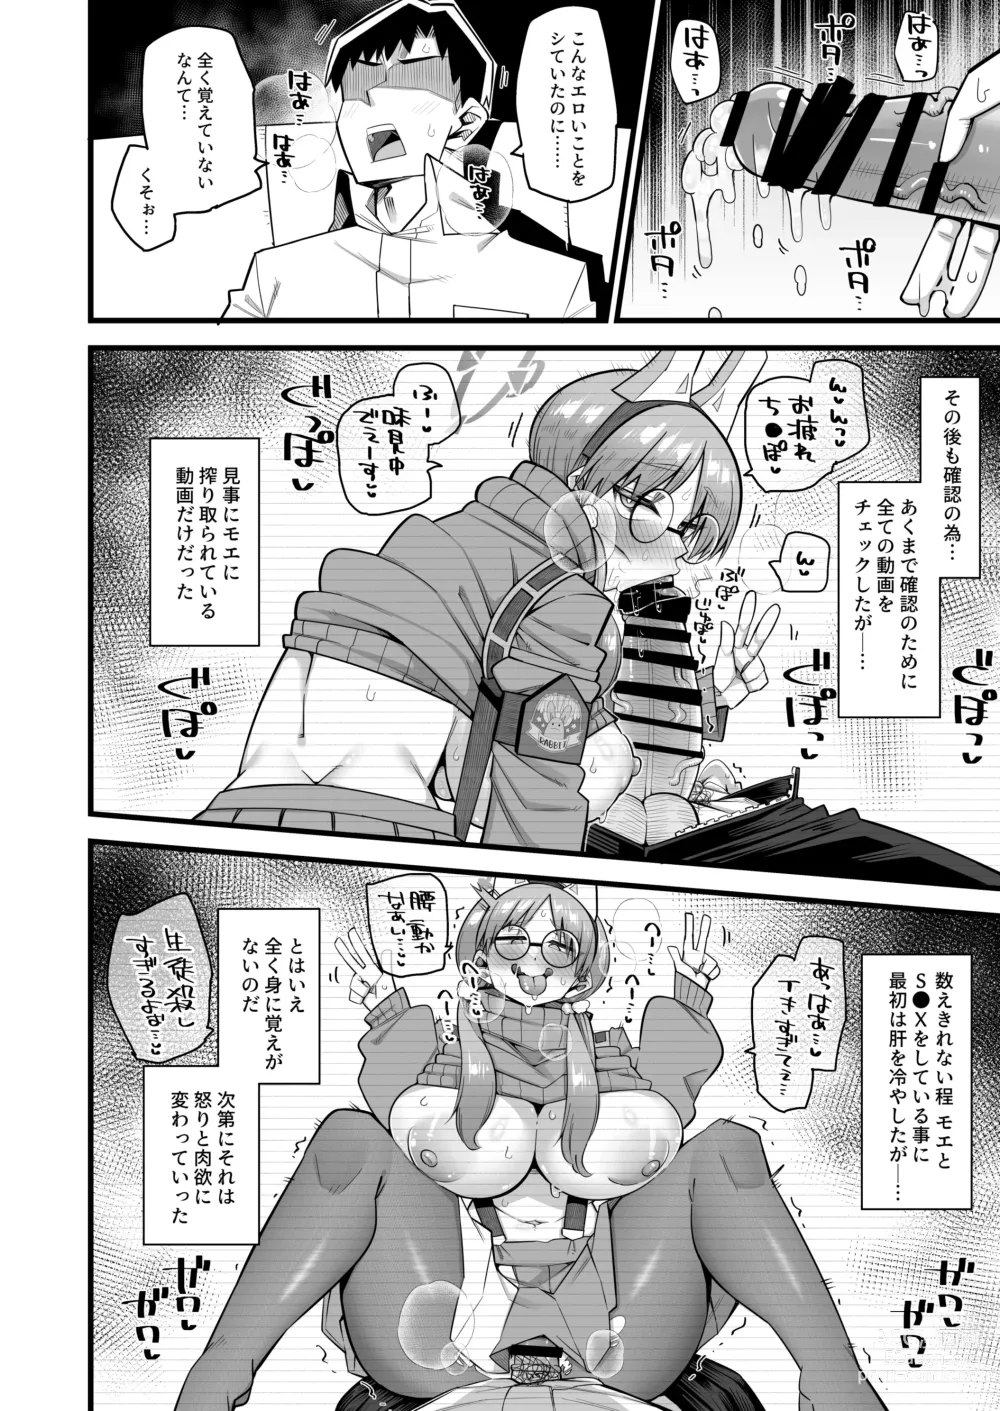 Page 12 of doujinshi Moe wa Sensei de Hametsu shitai